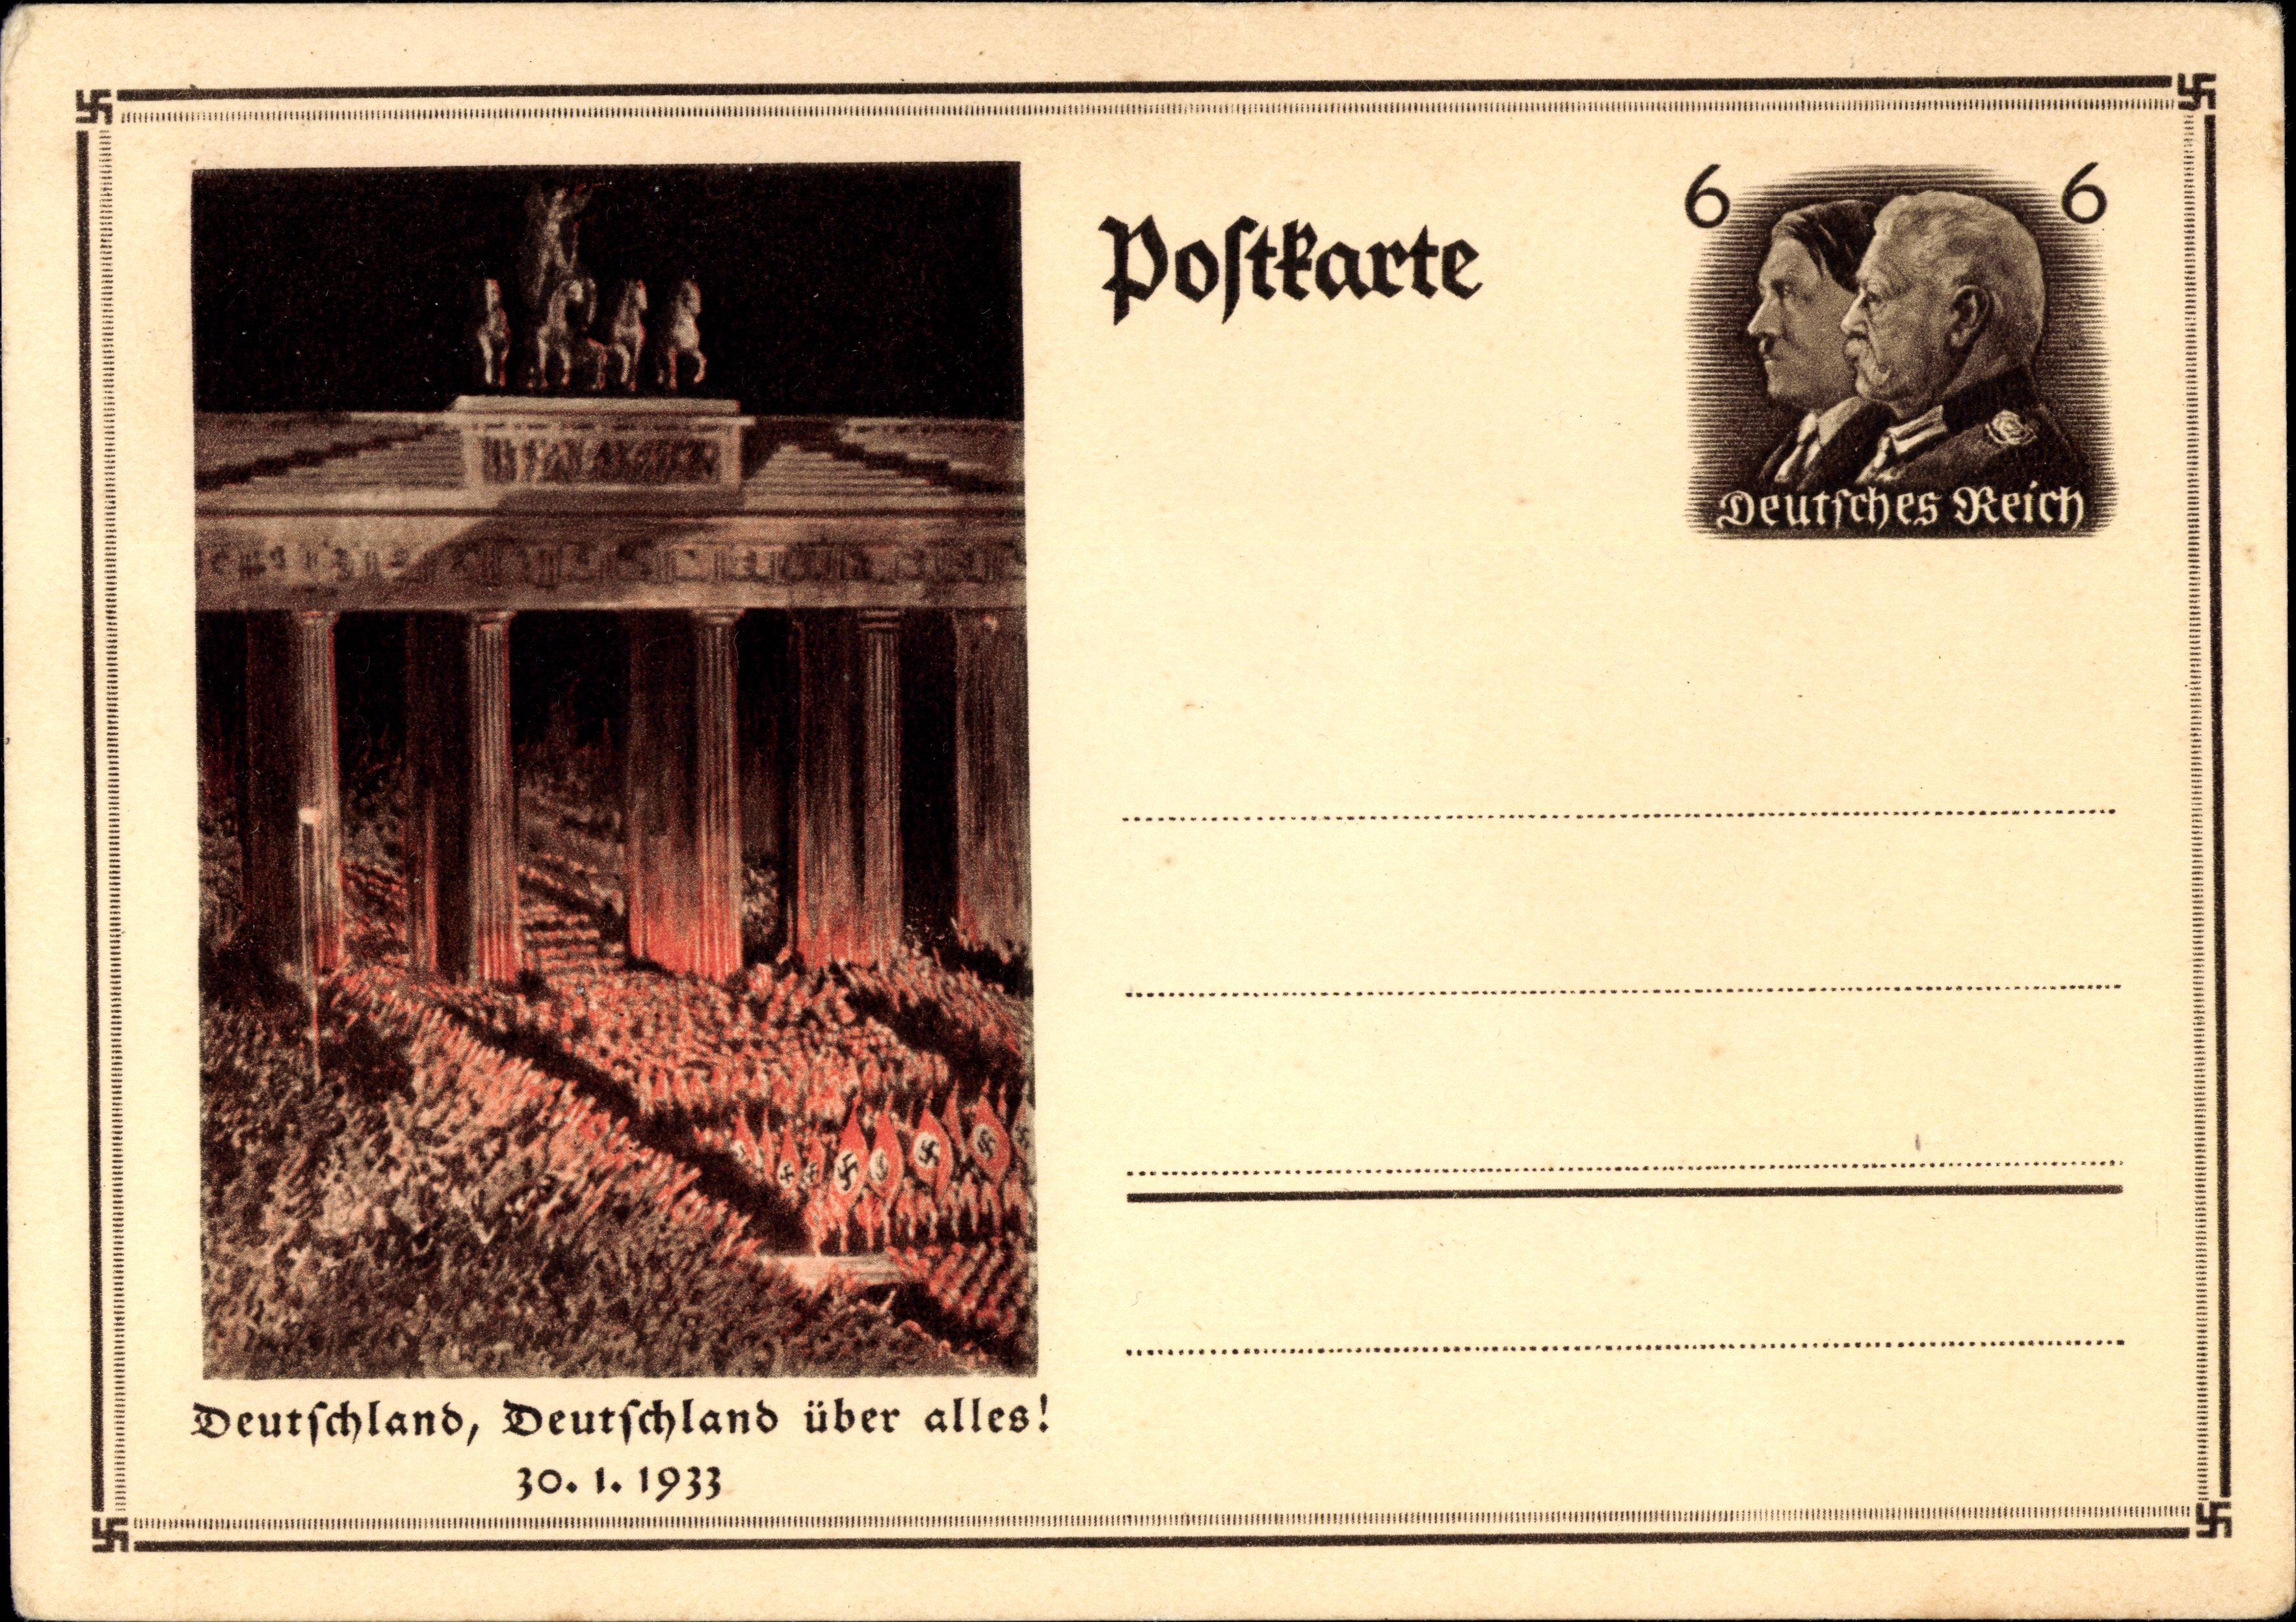 Postkarte der Nationalsozialisten in Erinnerung an die „Machtergreifung“: Weimar kam nach langem Siechtum zu Tode.